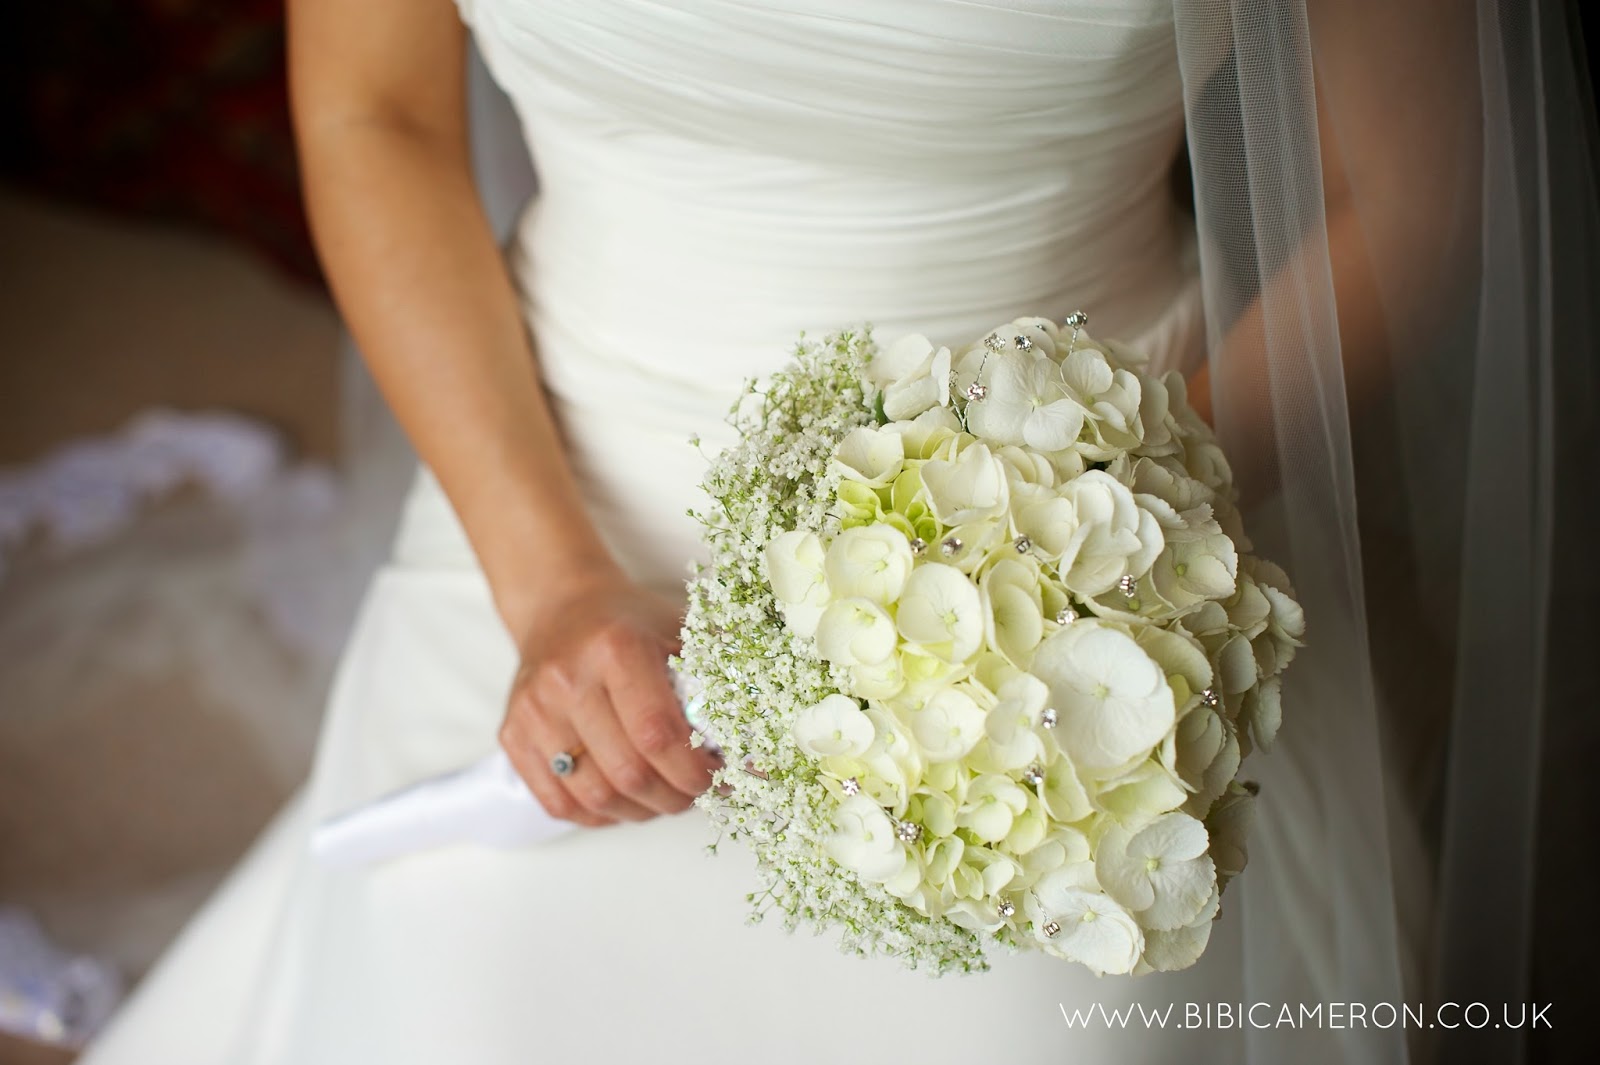 DIY WEDDING IDEAS: BRIDE BOUQUET AND MORE